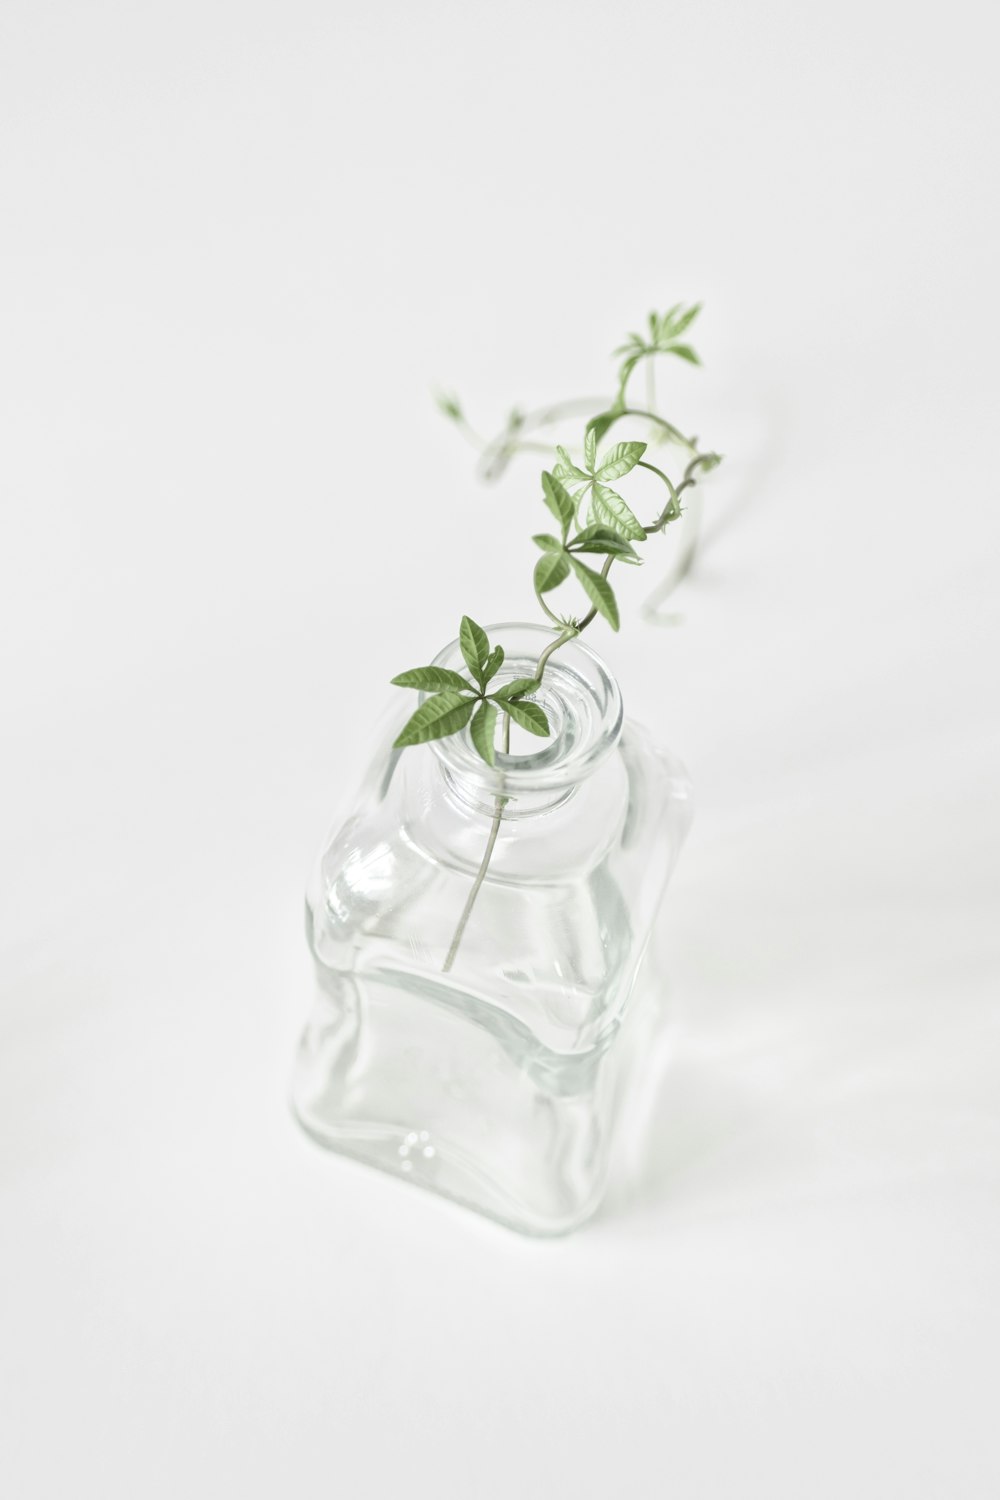 透明なガラス瓶に入った緑の植物